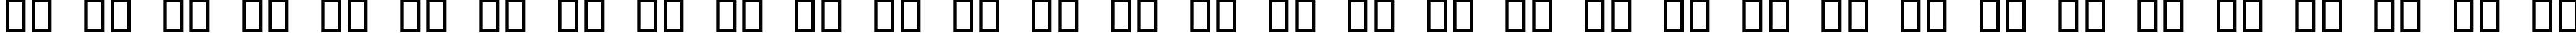 Пример написания русского алфавита шрифтом Digital dream Fat Skew Narrow